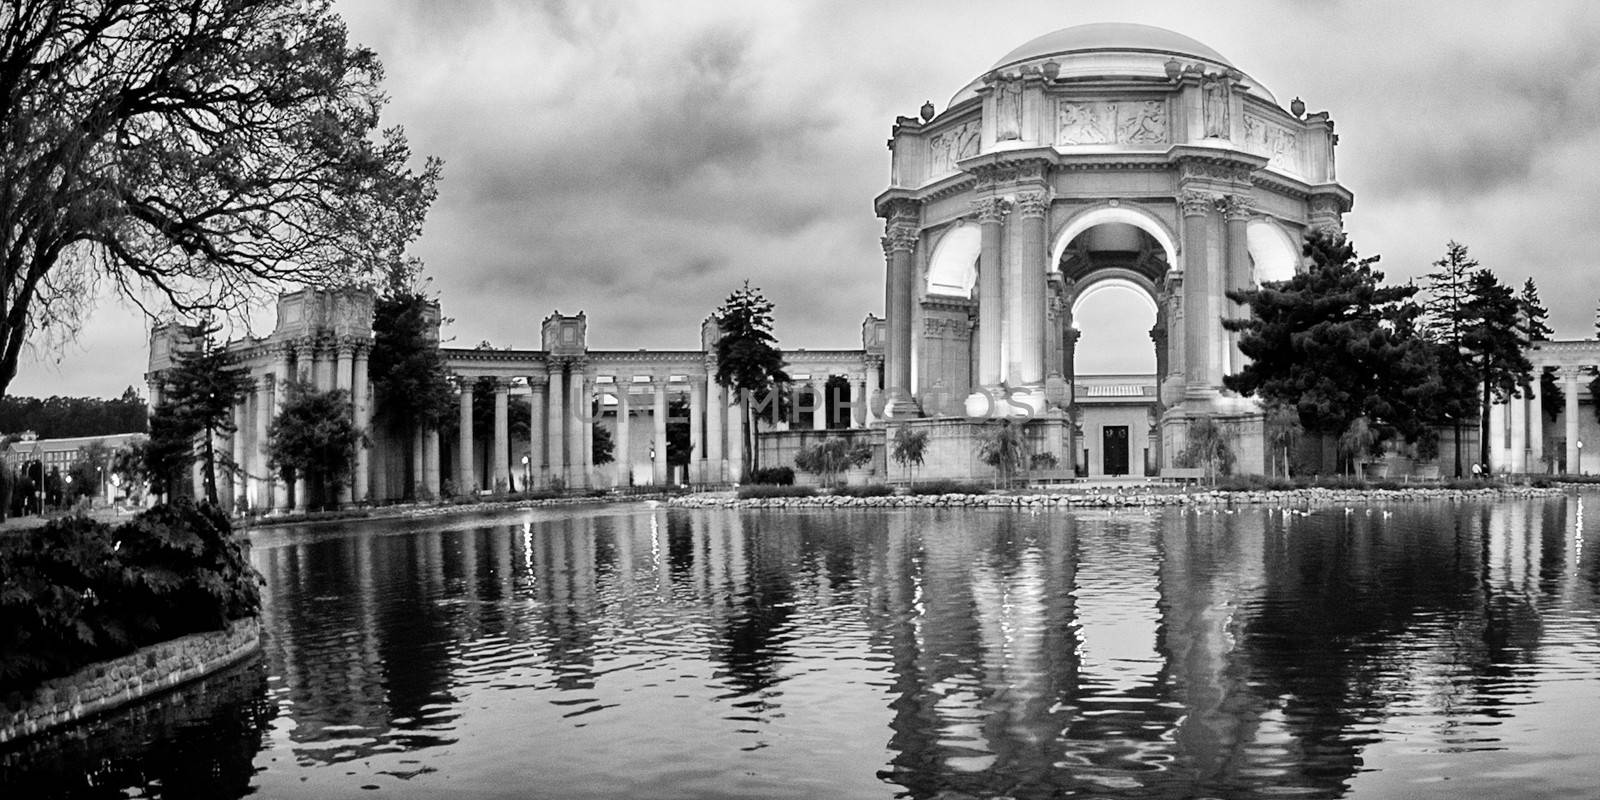 Reflection of Palace Of Fine Arts, Marina District, San Francisc by CelsoDiniz